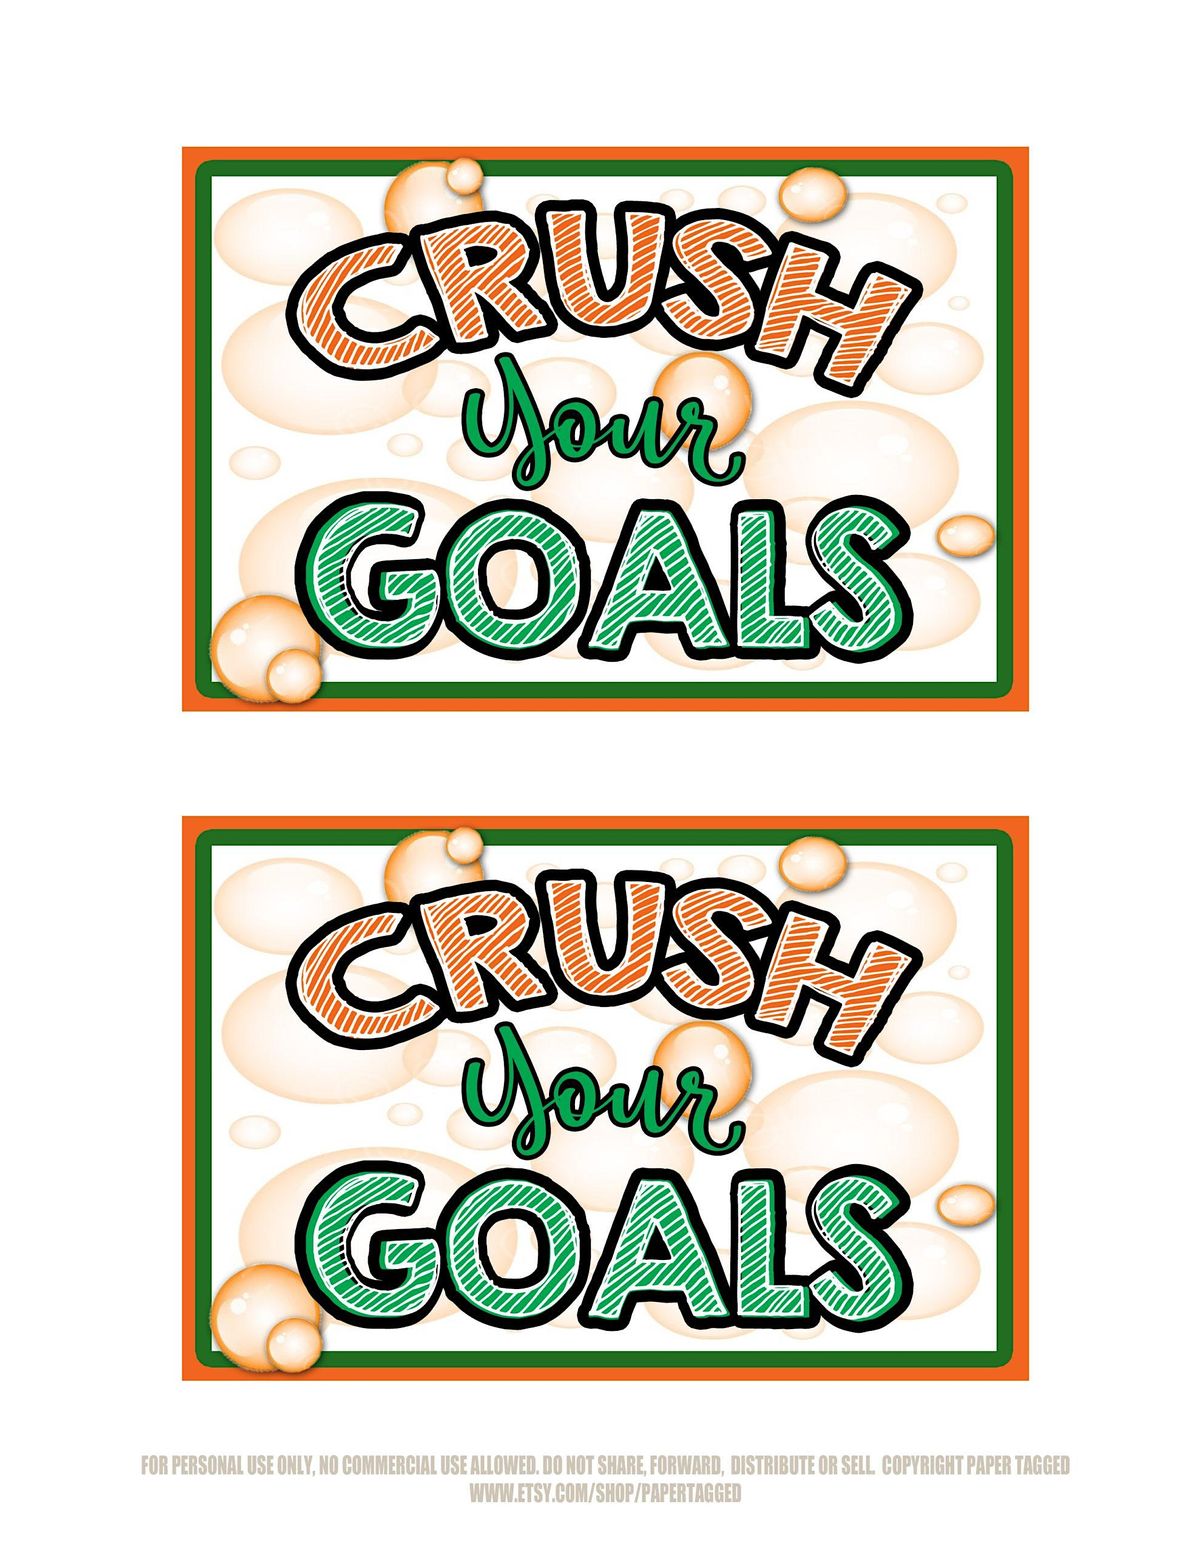 Crush Your Goals in 2023!